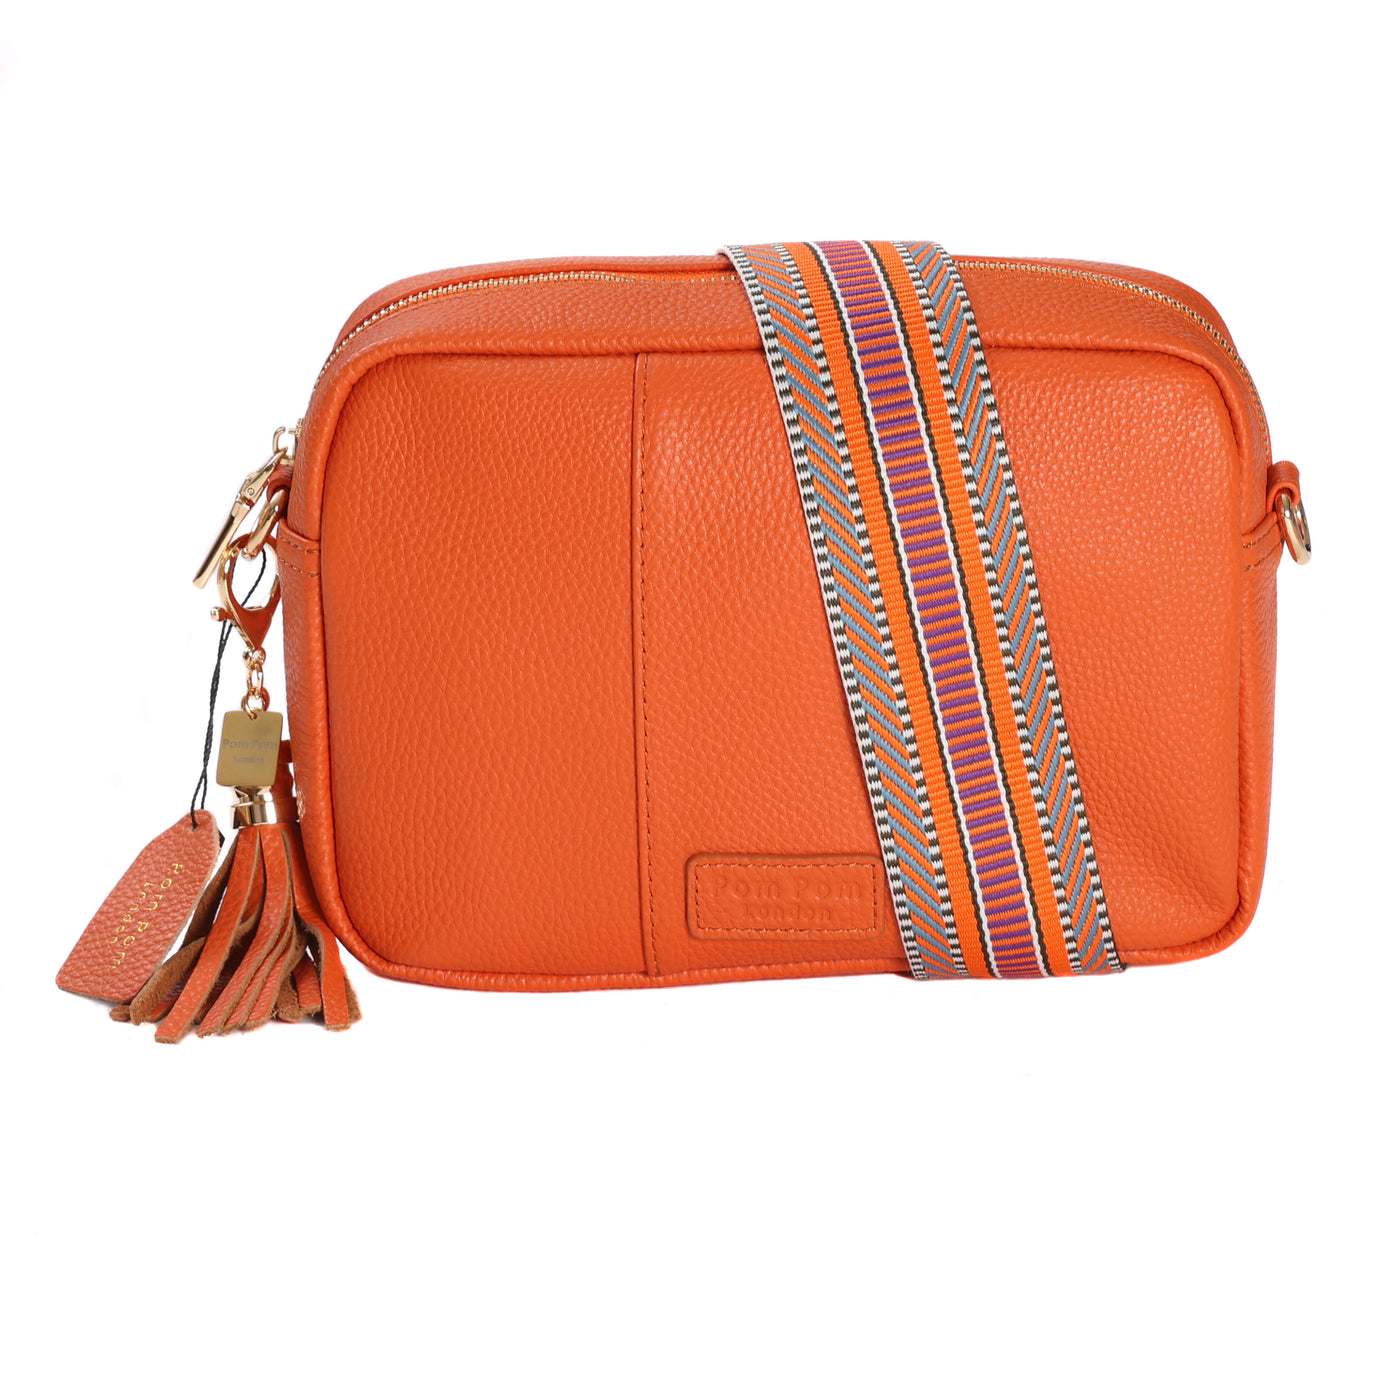 Women's Elegant Handbag, Classic Single-shoulder Bag, Pom Pom